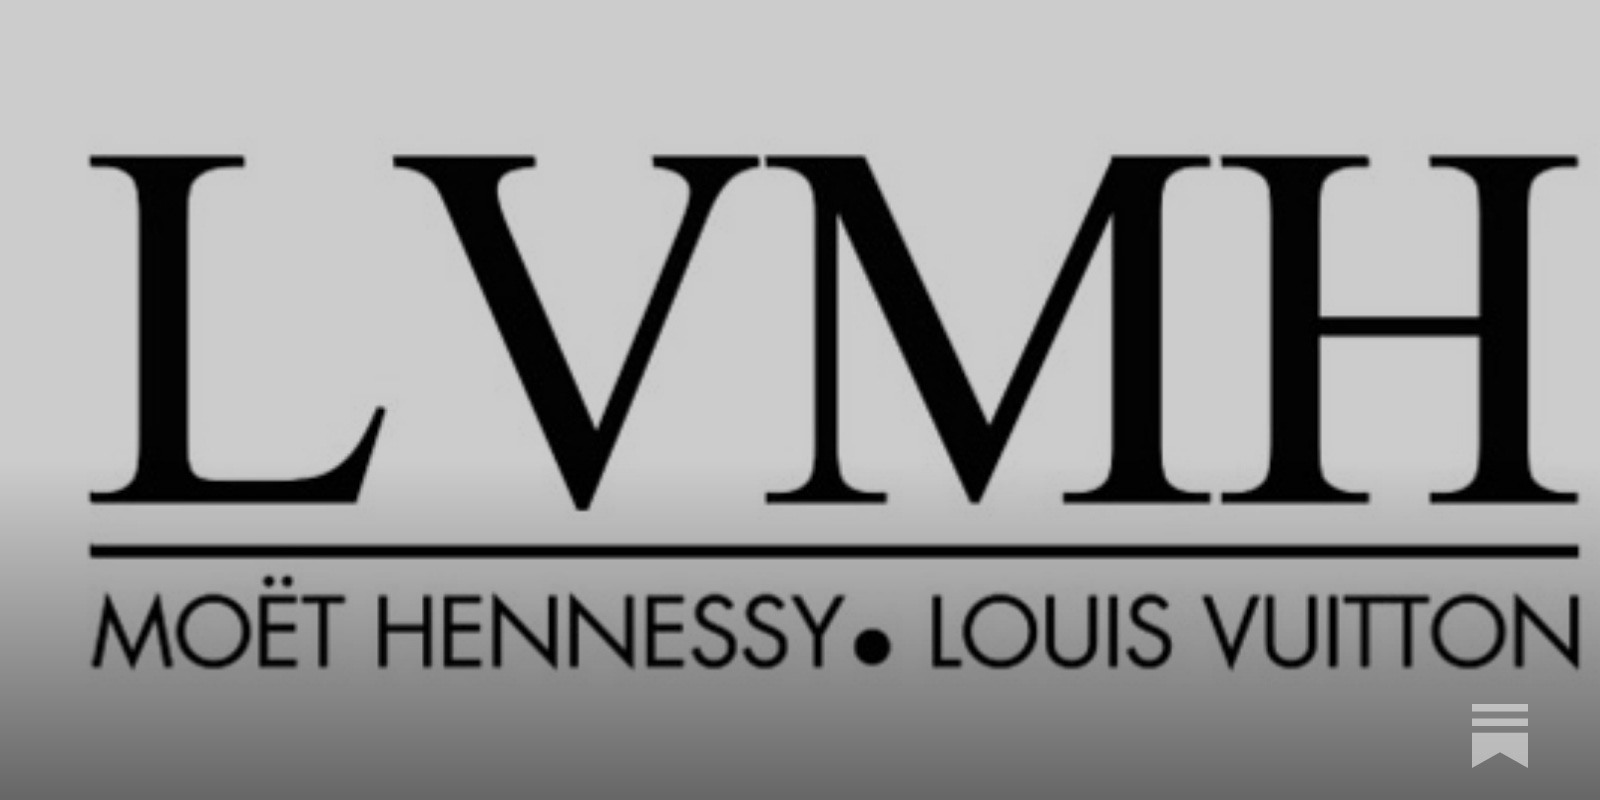 LVMH Investor Relations Material - Quartr